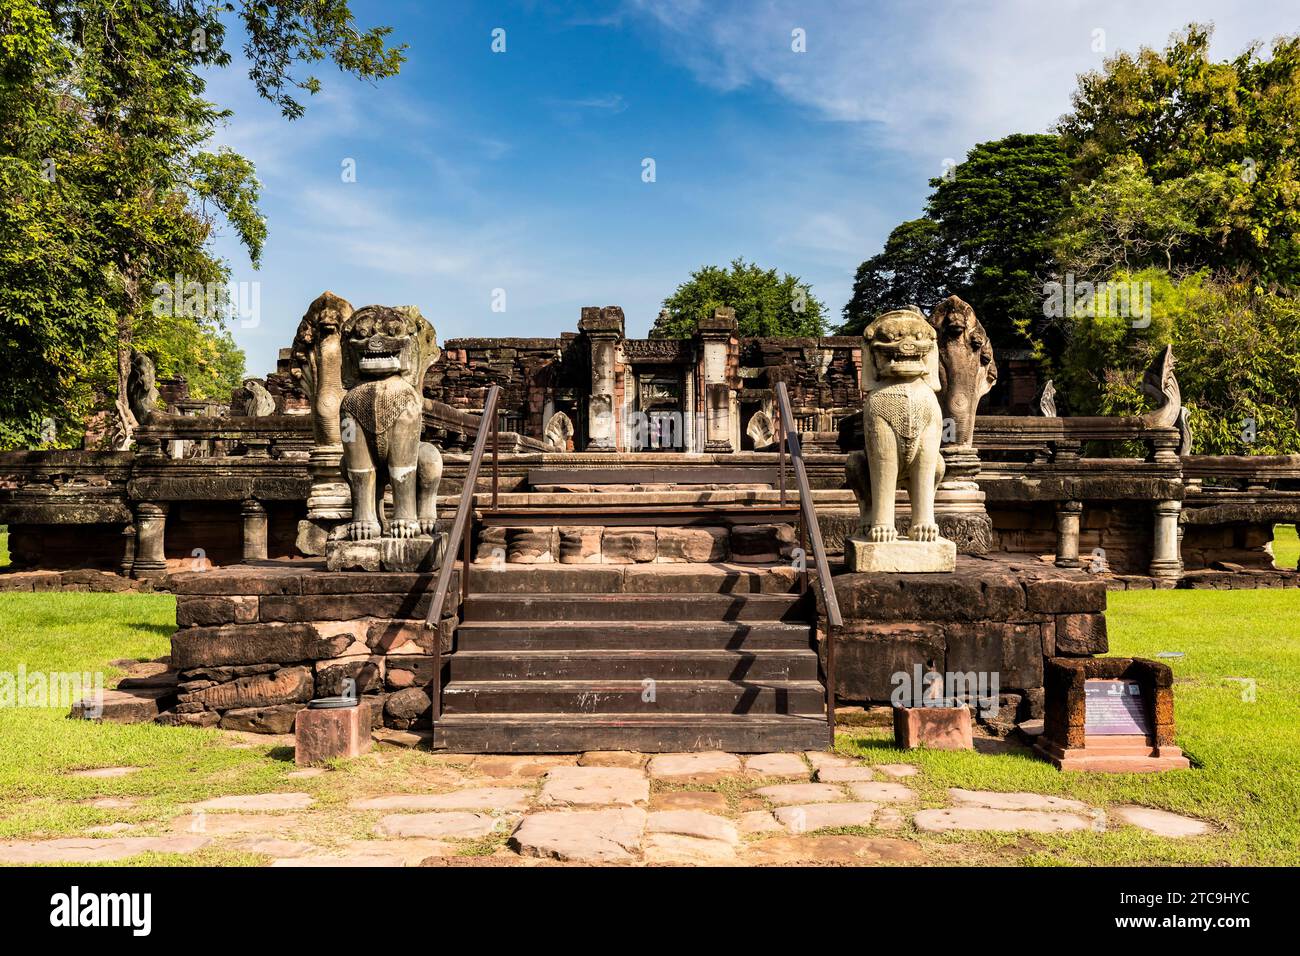 Parco storico di Phimai, antico tempio Khmer, scalini con statue di leoni custodi, Nakhon Ratchasima, Isan, Thailandia, Sud-Est asiatico, Asia Foto Stock